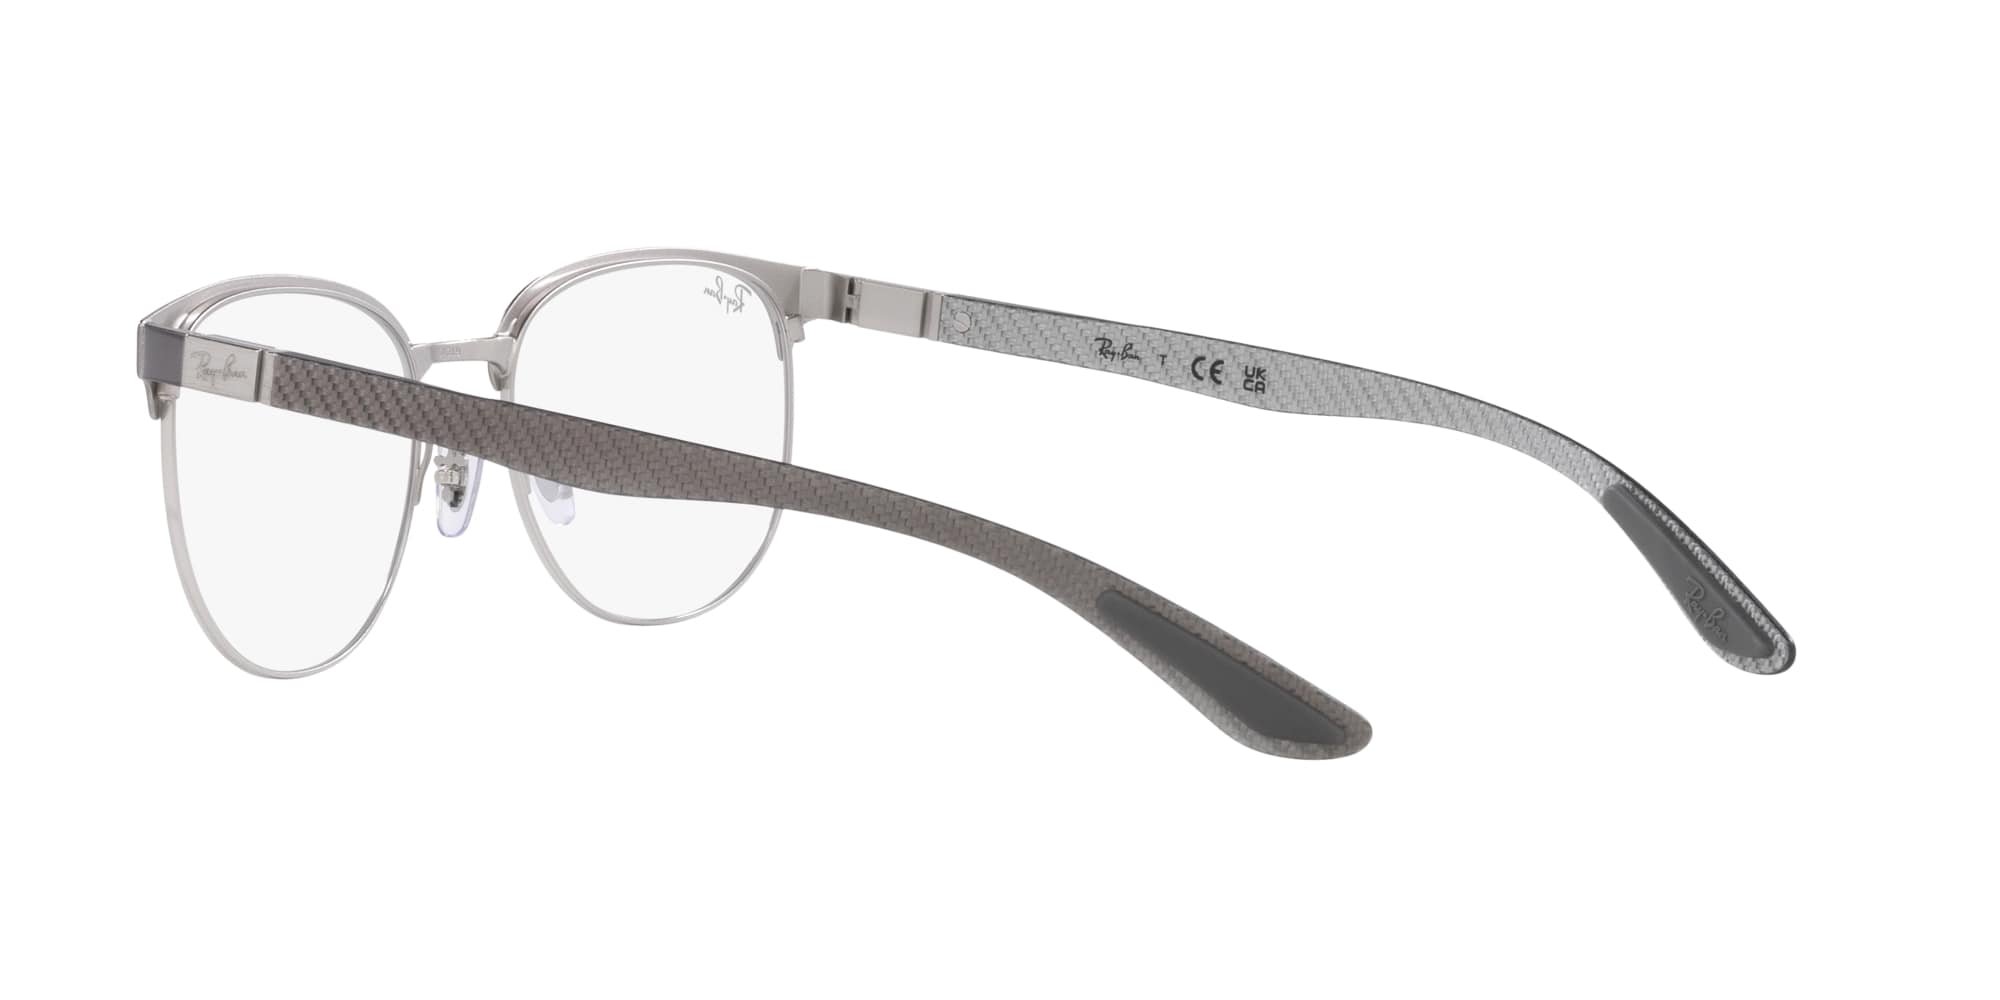 Das Bild zeigt die Korrektionsbrille RX8422 3125 von der Marke Ray Ban in grau.